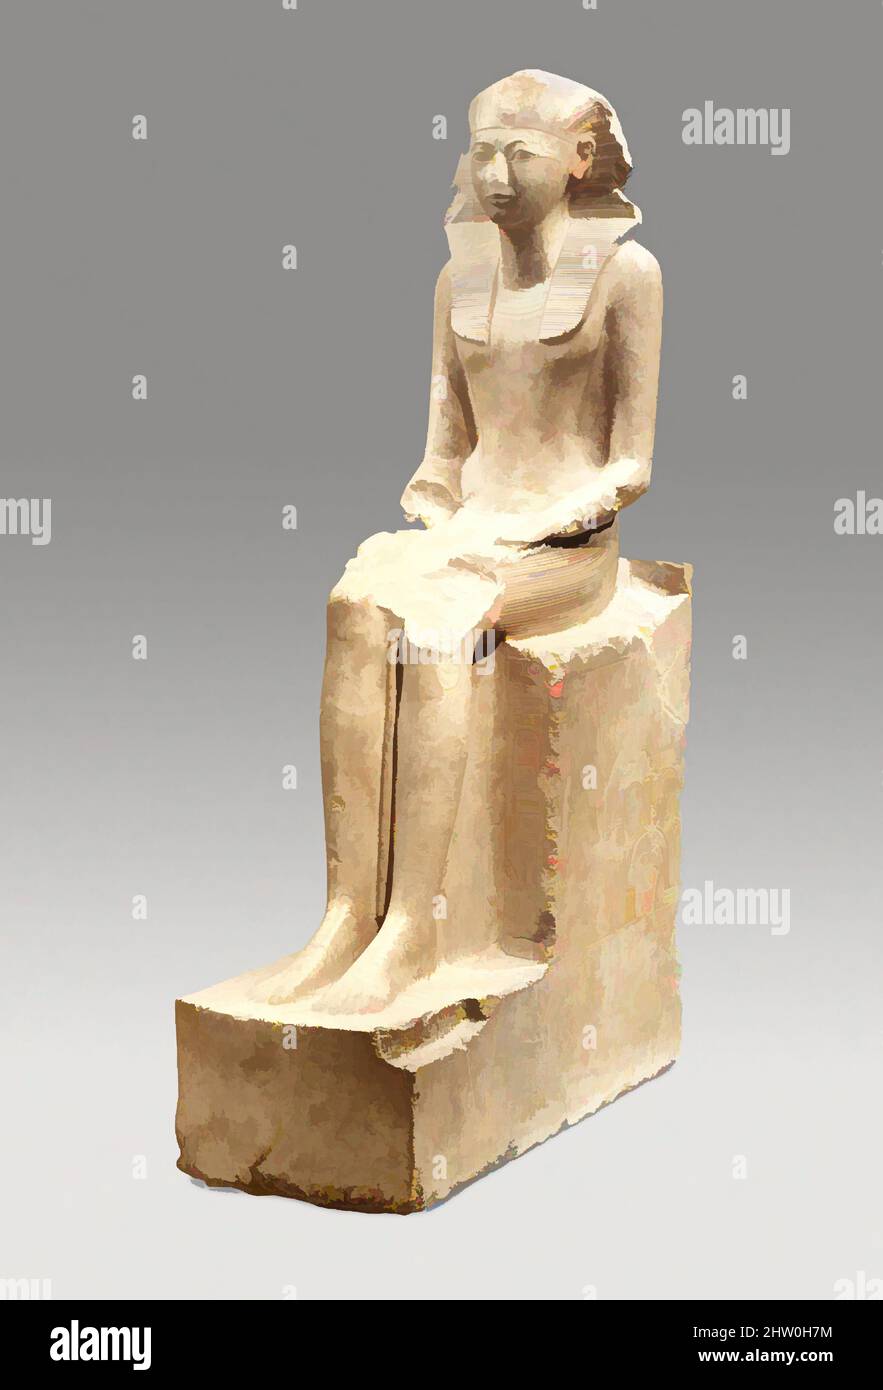 Art inspiré par la statue assise de Hatshepsut, Nouveau Royaume, dynastie 18, ca. 1479–1458 av. J.-C., de l'Égypte, de la haute Égypte, de Thèbes, de Deir el-Bahri & el-Asasif, de la carrière de Senenmut, 1926–28/Lepsius 1843–45, de calcaire induré, peinture, H. 195 cm (76 3/4 po); W. 49 cm (19 5/16 po); D. 114 cm (44 7/8, œuvres classiques modernisées par Artotop avec une touche de modernité. Formes, couleur et valeur, impact visuel accrocheur sur l'art émotions par la liberté d'œuvres d'art d'une manière contemporaine. Un message intemporel qui cherche une nouvelle direction créative. Artistes qui se tournent vers le support numérique et créent le NFT Artotop Banque D'Images